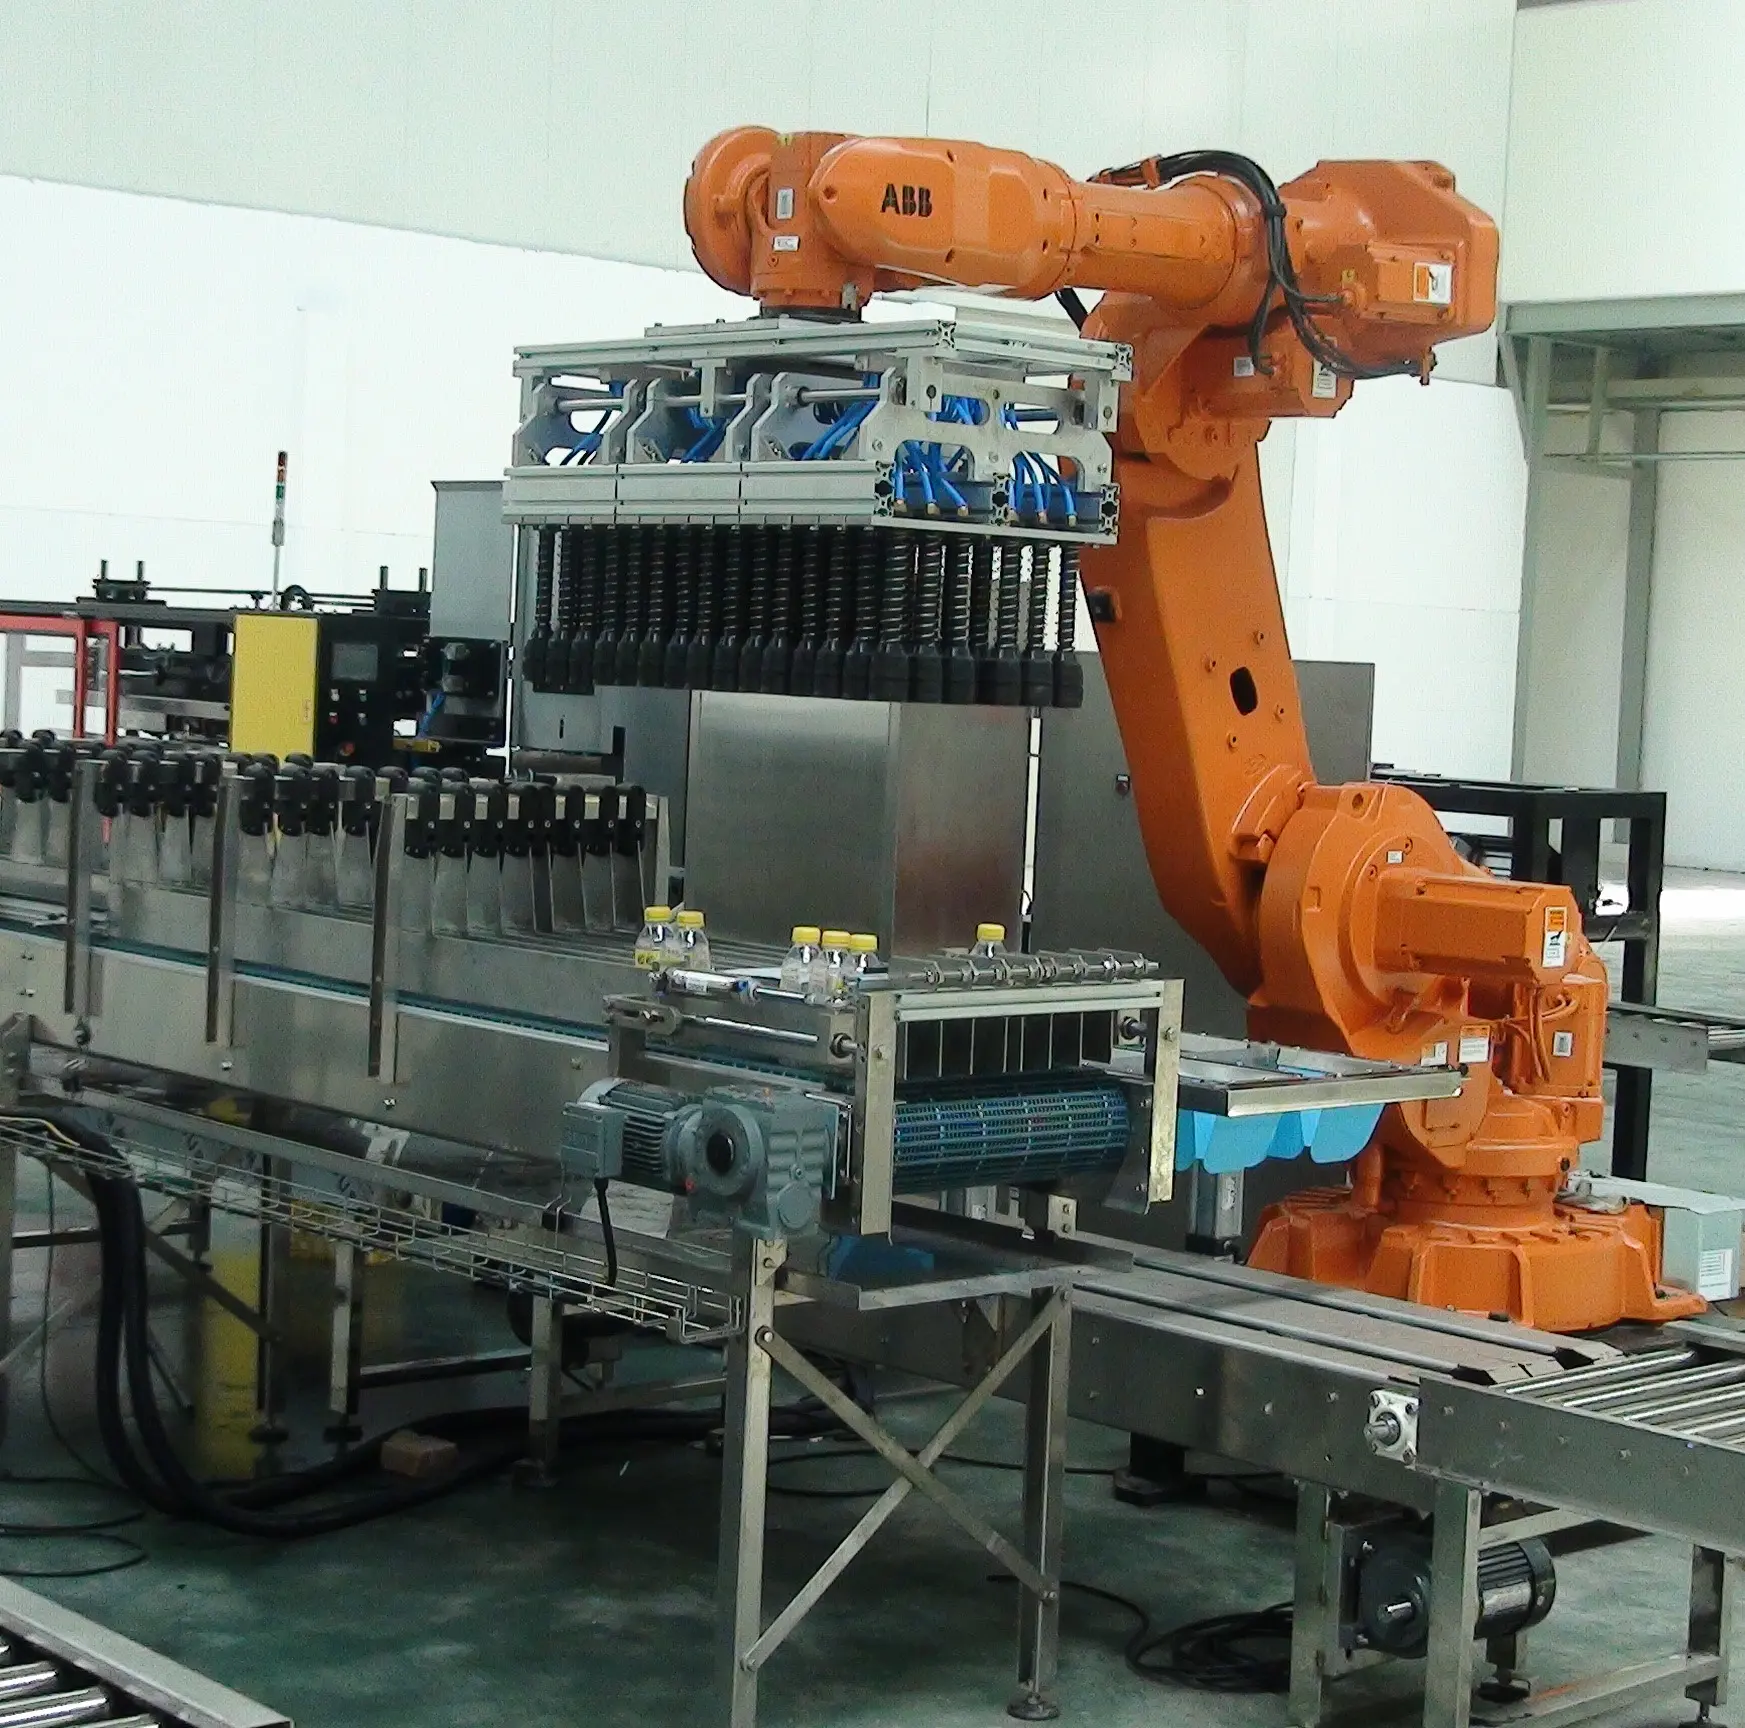 เครื่องดื่มอาหารสารเคมีถุงขวดบาร์เรลกล่องพาเลท,สำหรับตั้งสิ่งของหุ่นยนต์ Encaser Palletizer ระบบสายพานลำเลียงเครื่องกล